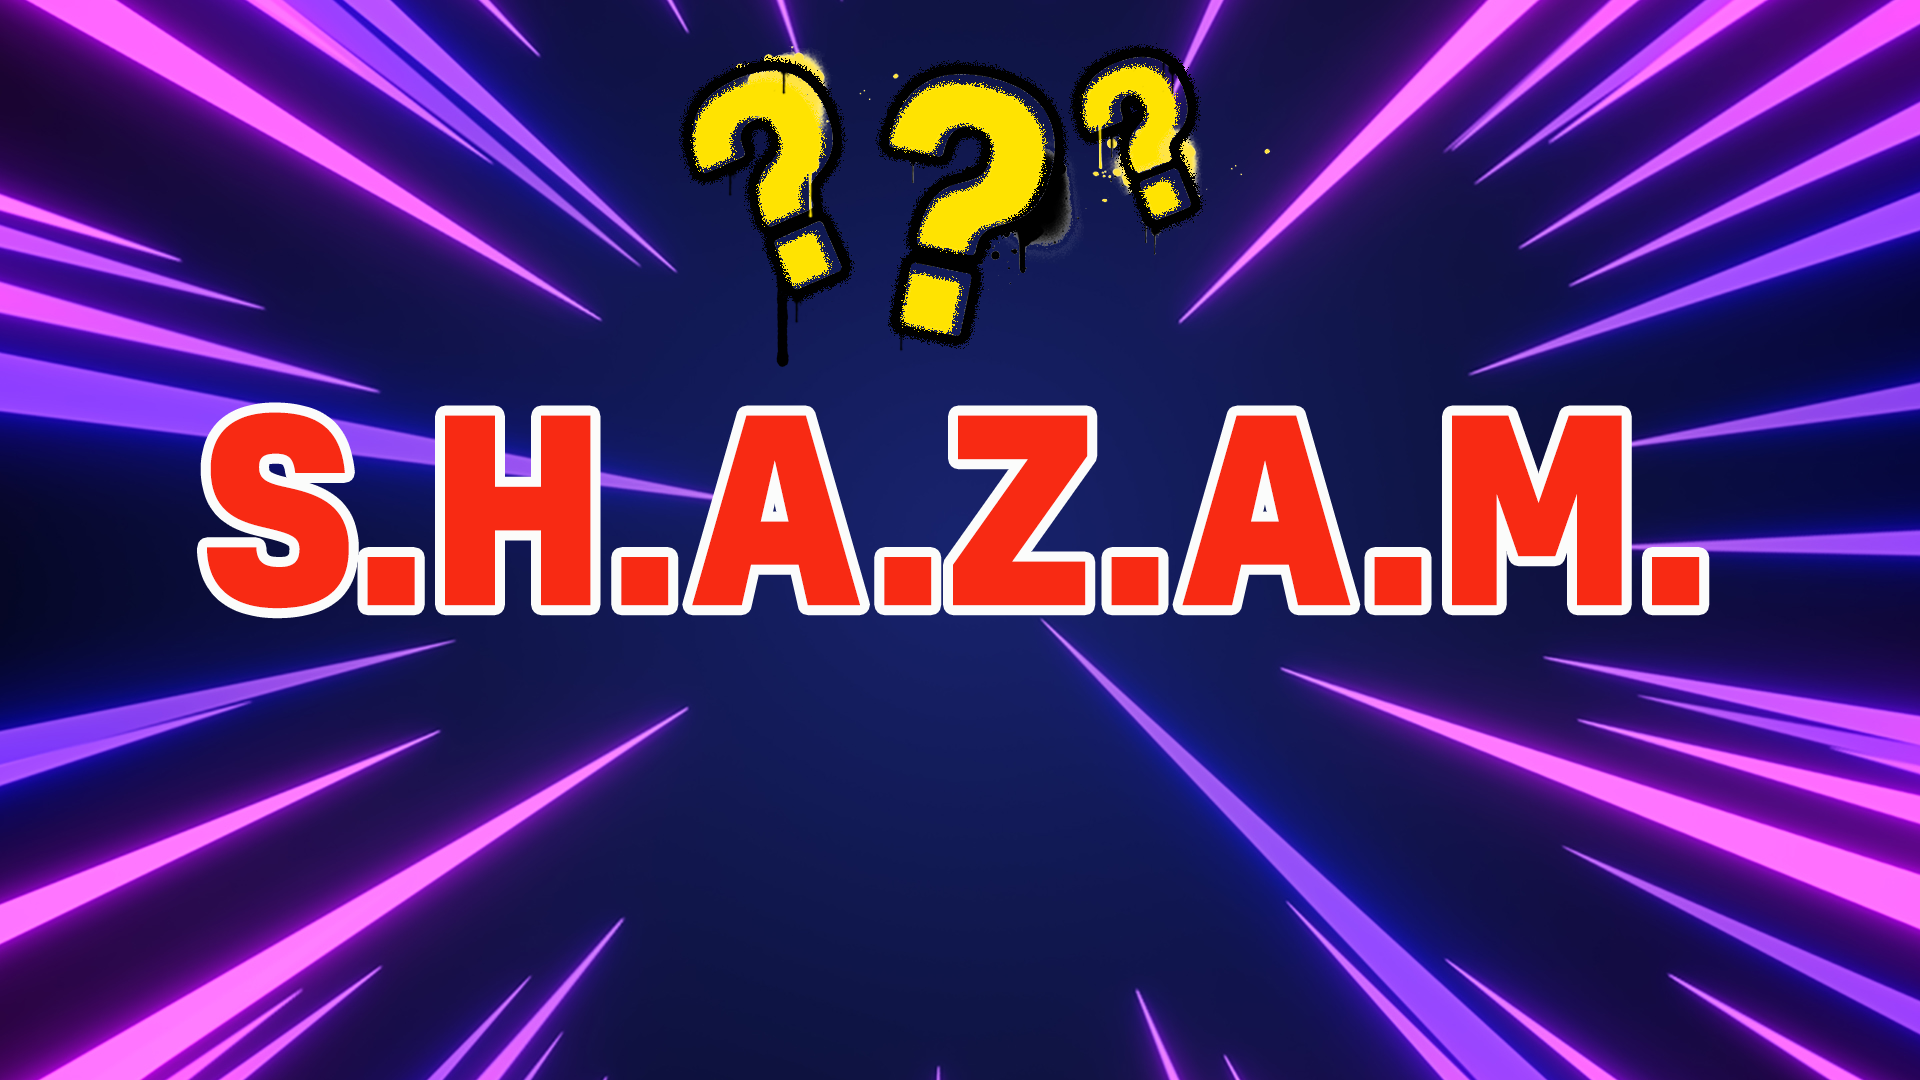 The acronym shazam on laser background